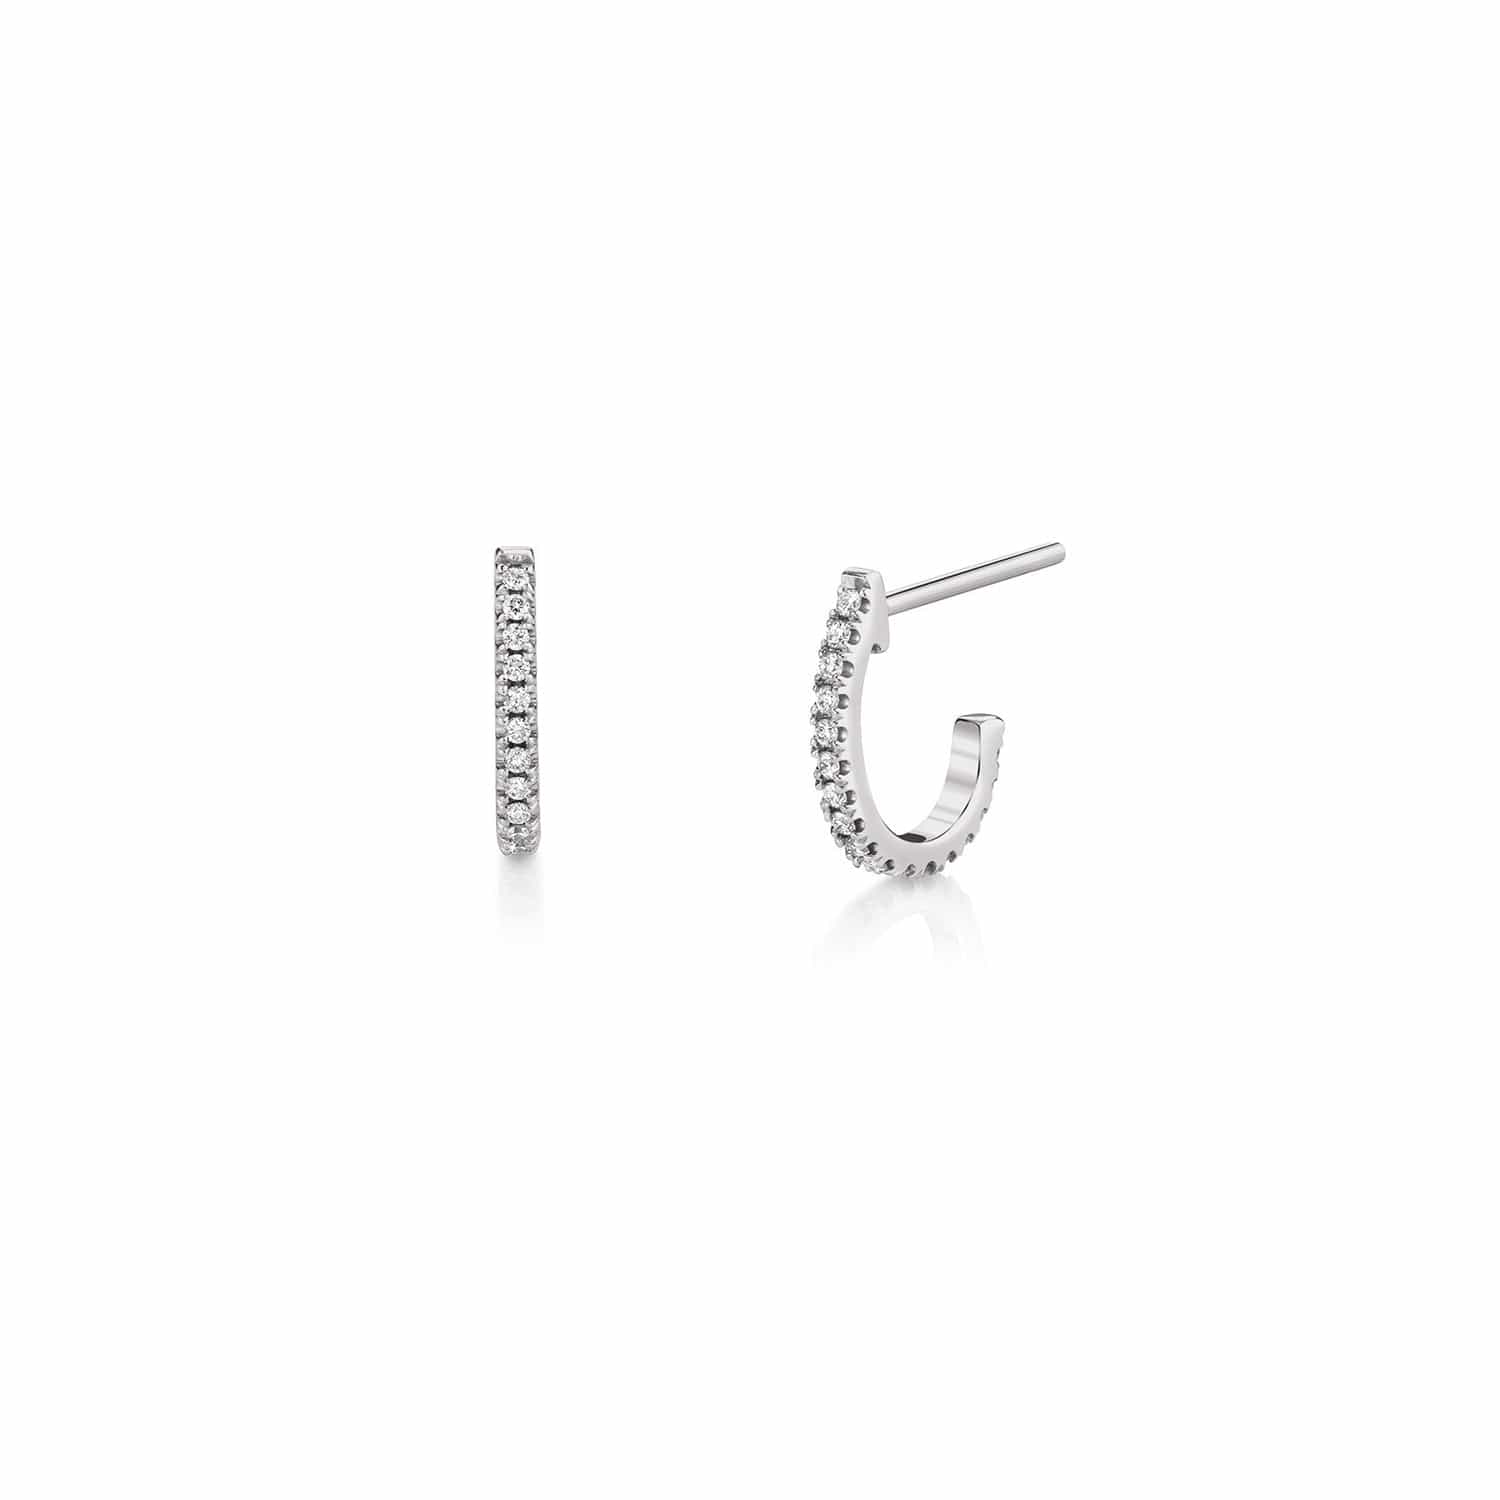 MICHAEL M Earrings 14K White Gold Diamond Huggie Hoop Earrings ER270WG